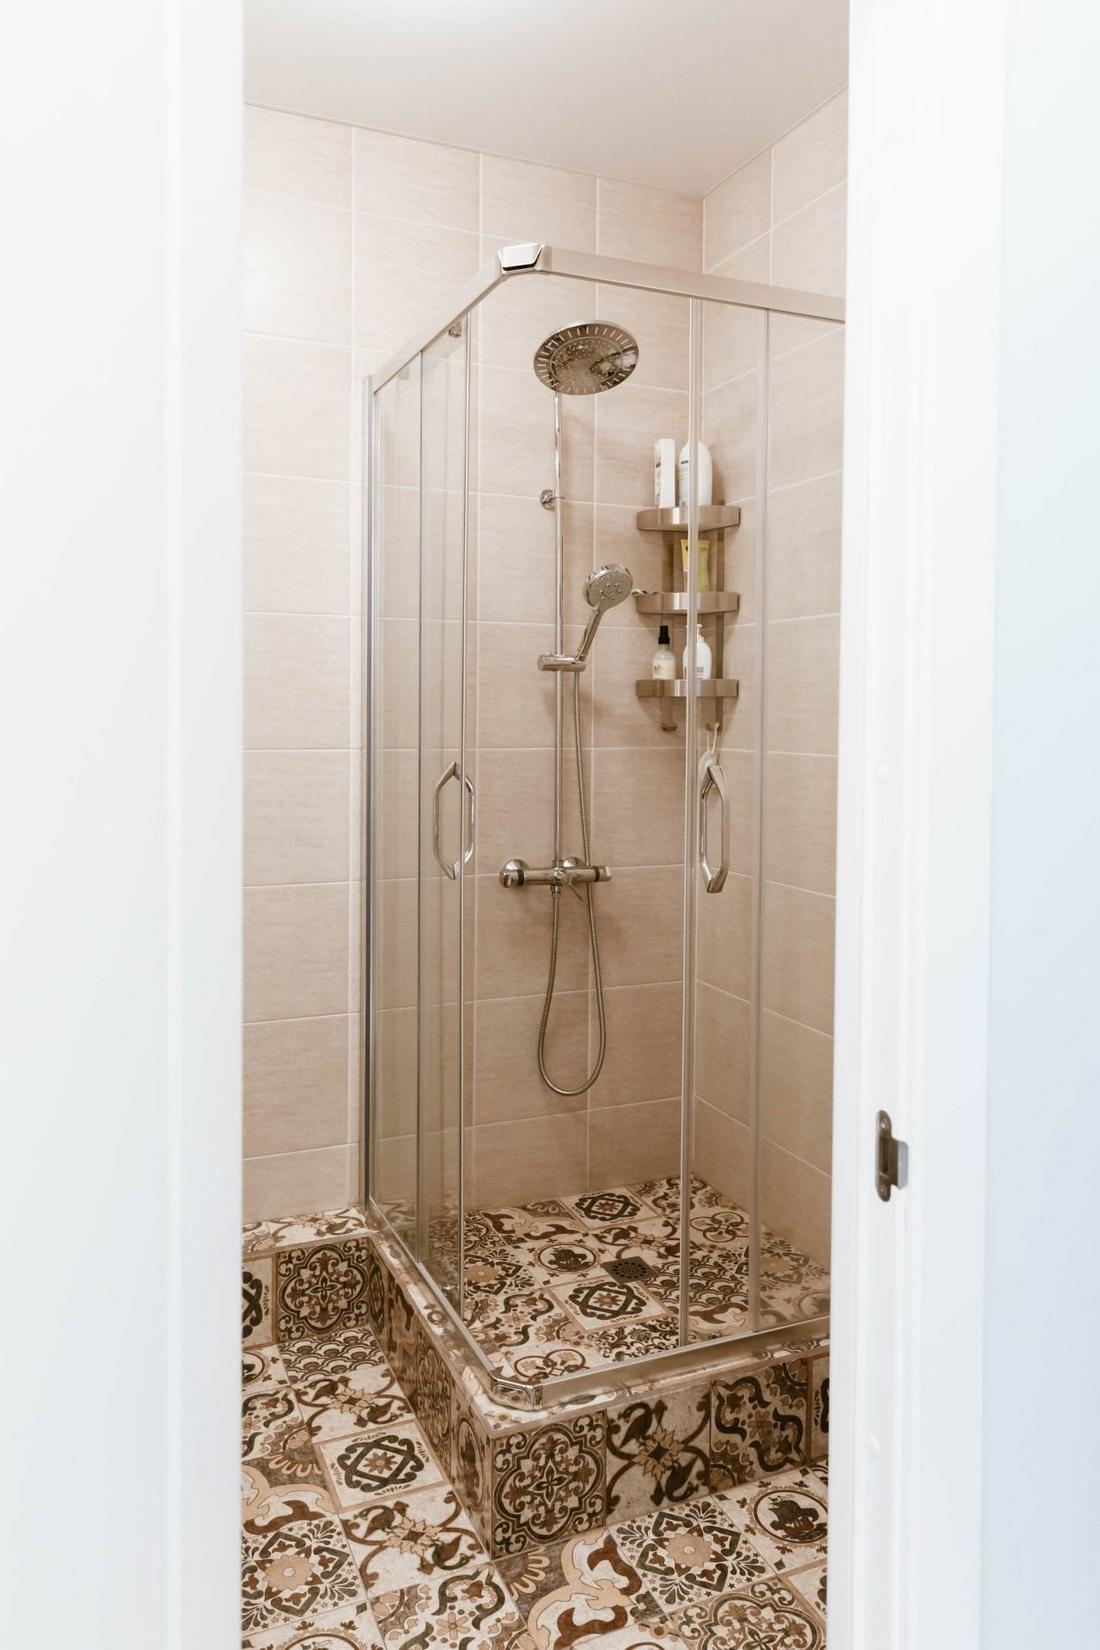 Phòng tắm sử dụng gạch lát tường màu be cho cảm giác sang trọng. Riêng phần sàn lát gạch bông hoa văn cổ điển để tạo điểm nhấn. Buồng tắm đứng thiết kế nâng sàn khoảng 20cm với hệ thống thoát nước, vòi hoa sen và kệ mở gắn tường tiện ích.